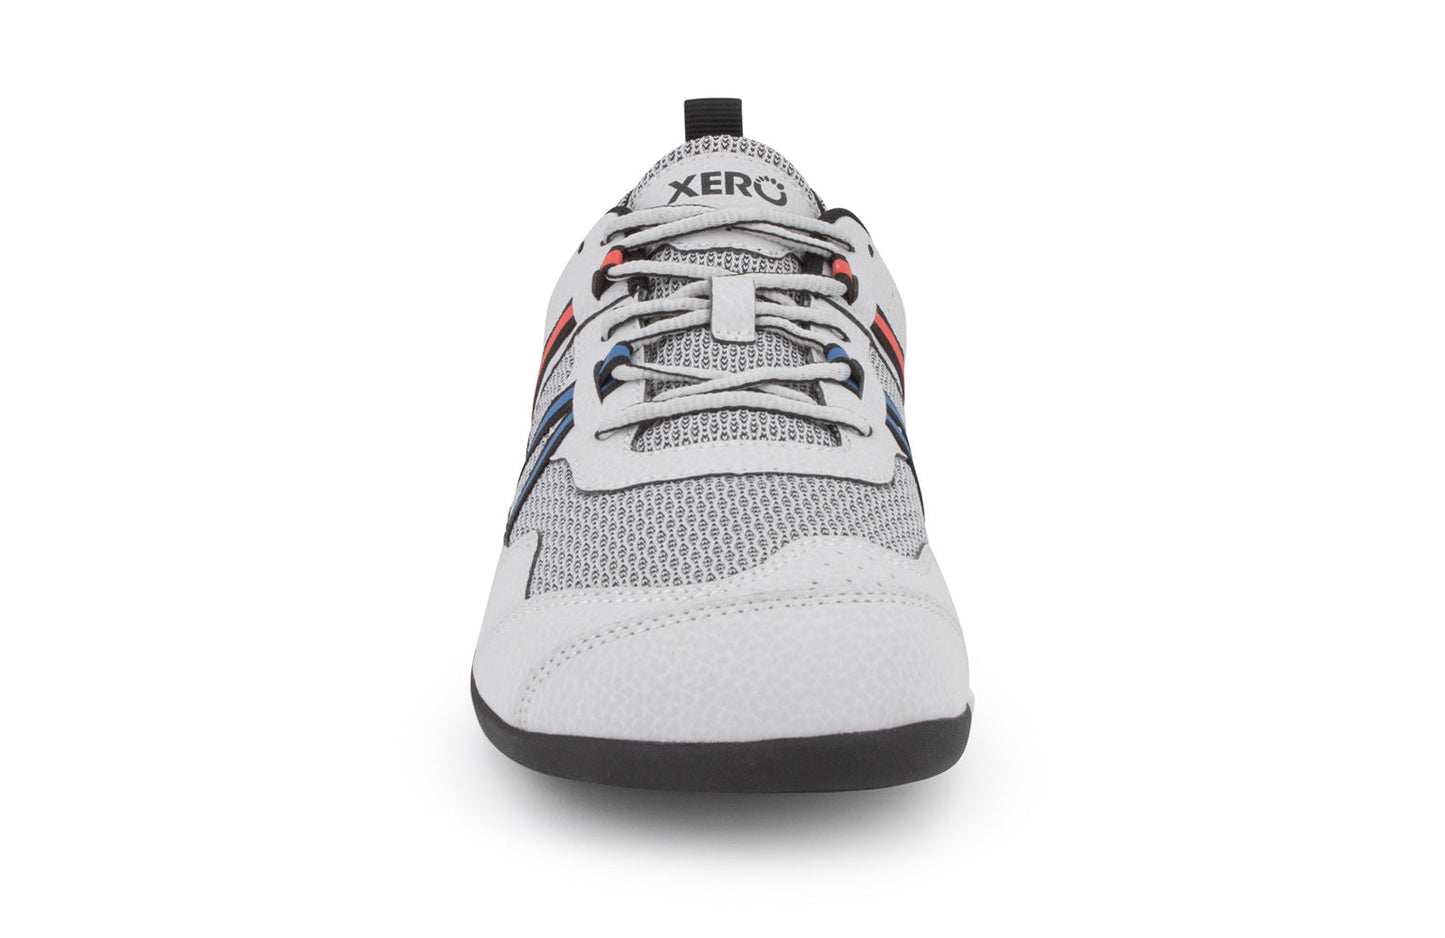 Xero Shoes Prio barfods løbesko/træningssko til mænd i farven lunar, forfra